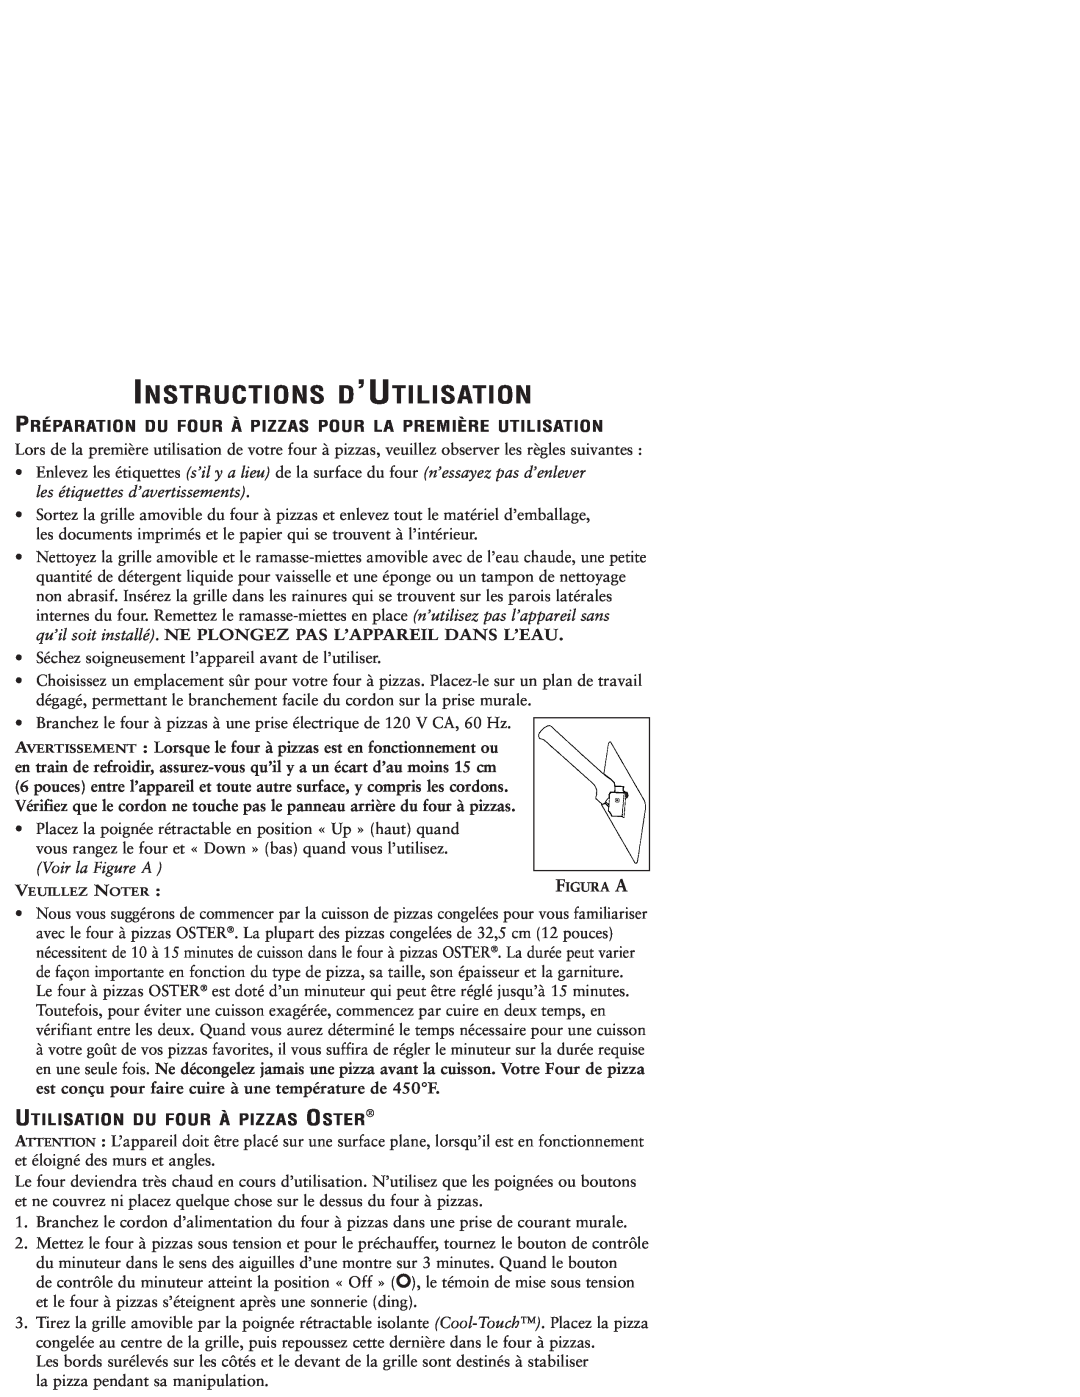 Sunbeam 3224 user manual Instructions D’Utilisation, Utilisation Du Four À Pizzas Oster 